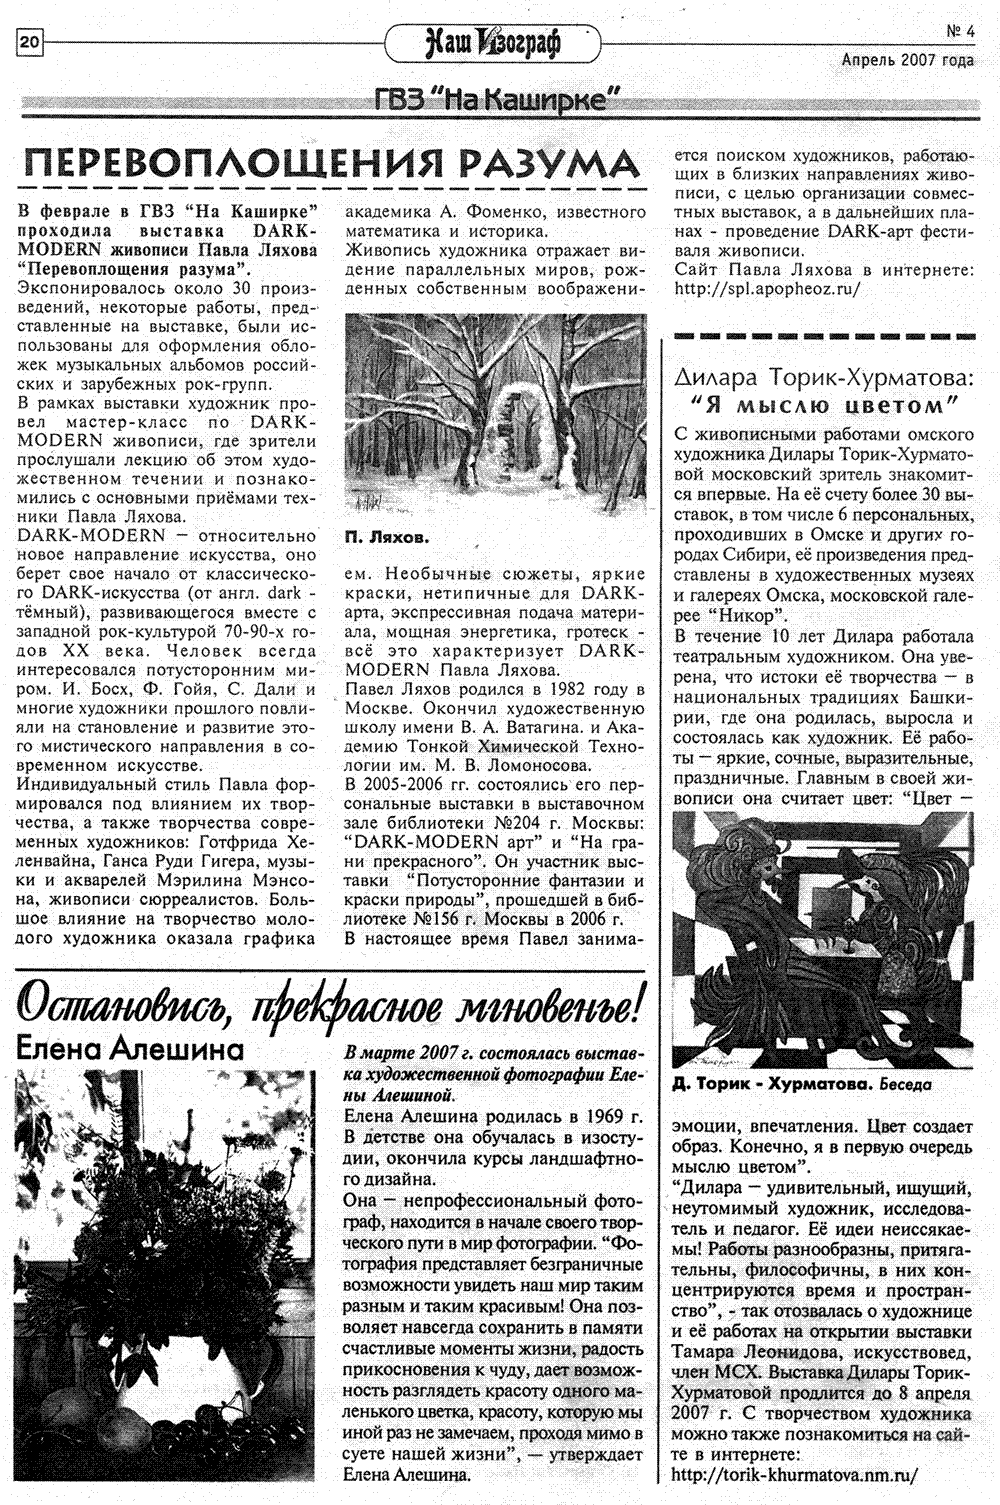 Перевоплощения разума - проект Павла Ляхова. Статья в газете Наш Изограф №4 (156) апрель 2007 года